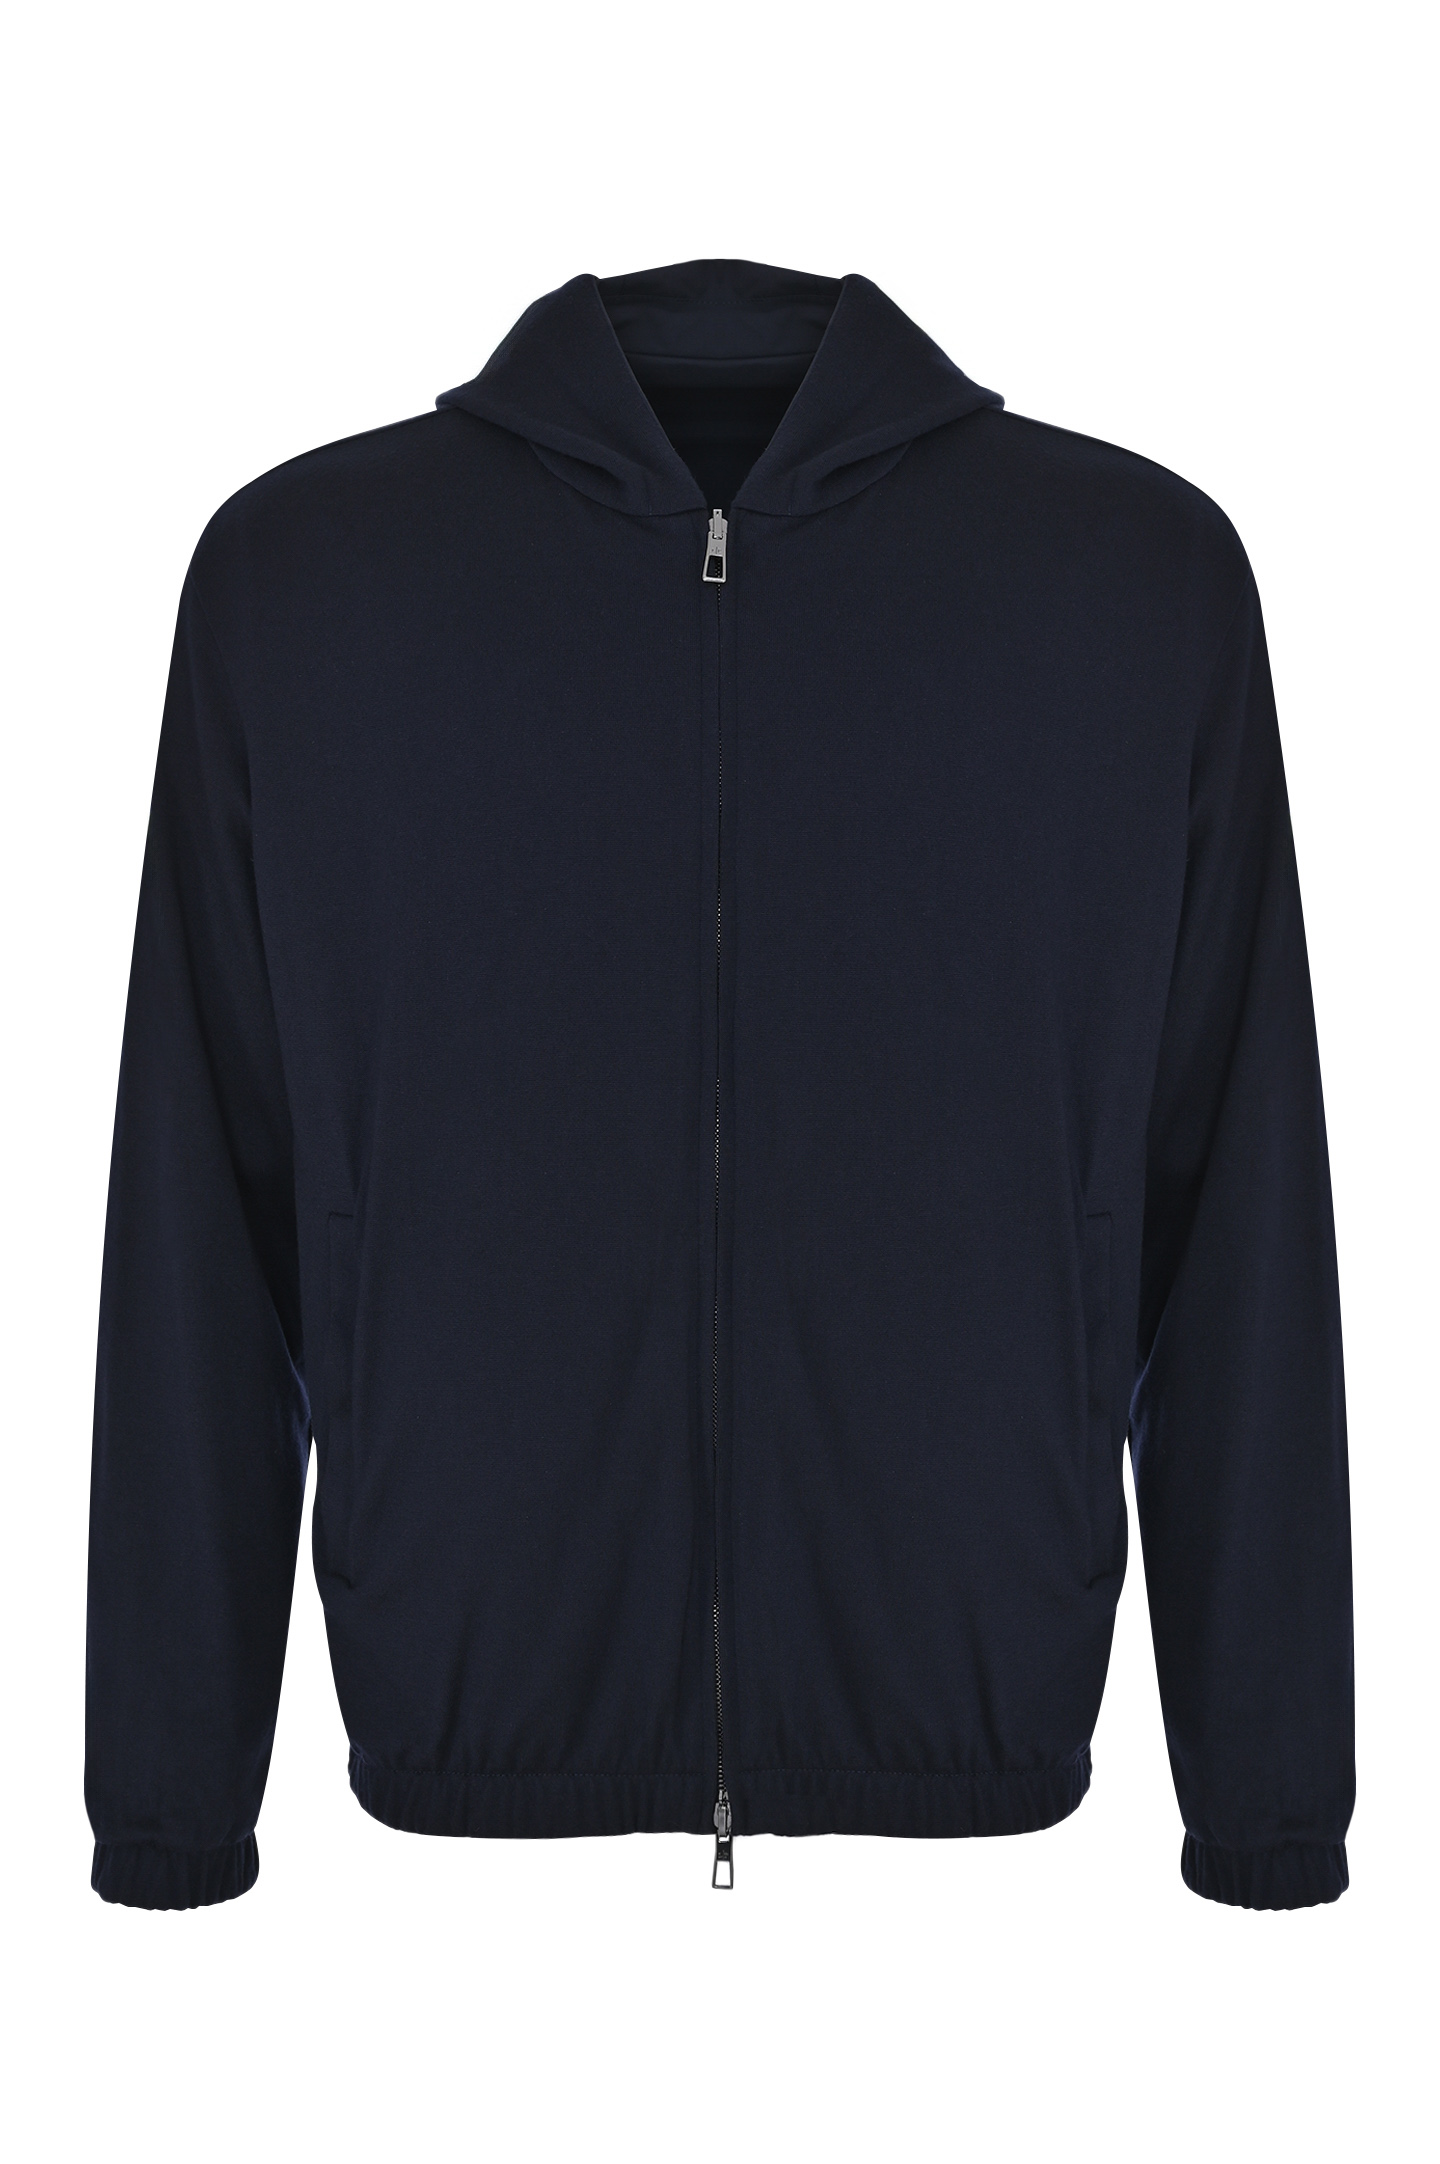 Куртка двухсторонняя LORO PIANA FAL4469, цвет: Темно-синий, Мужской